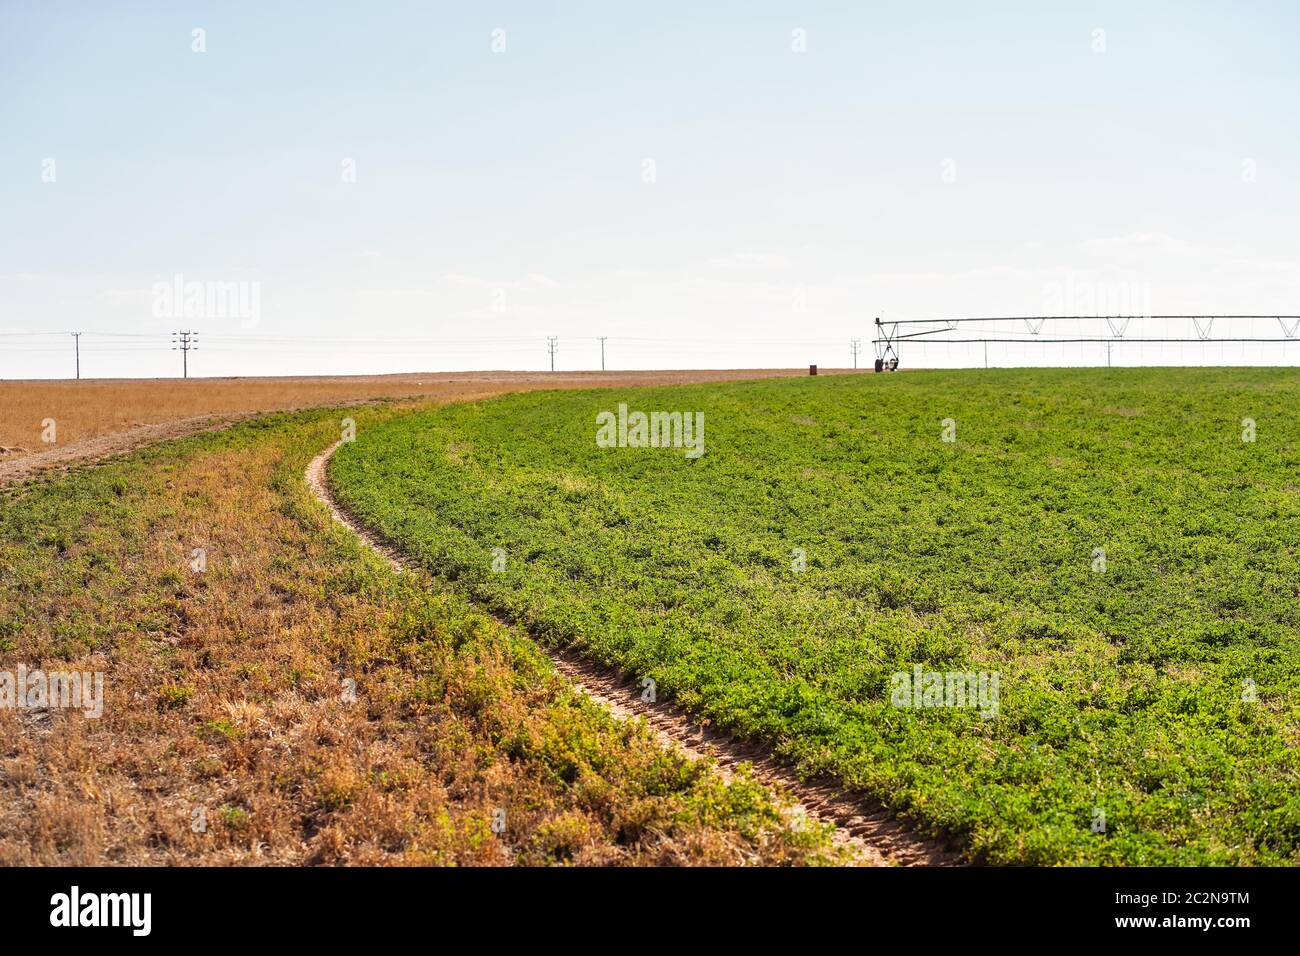 Paesaggio sparato di campi agricoli irrigati con acque sotterranee in zona desertica nel nord Arabia Saudita Foto Stock